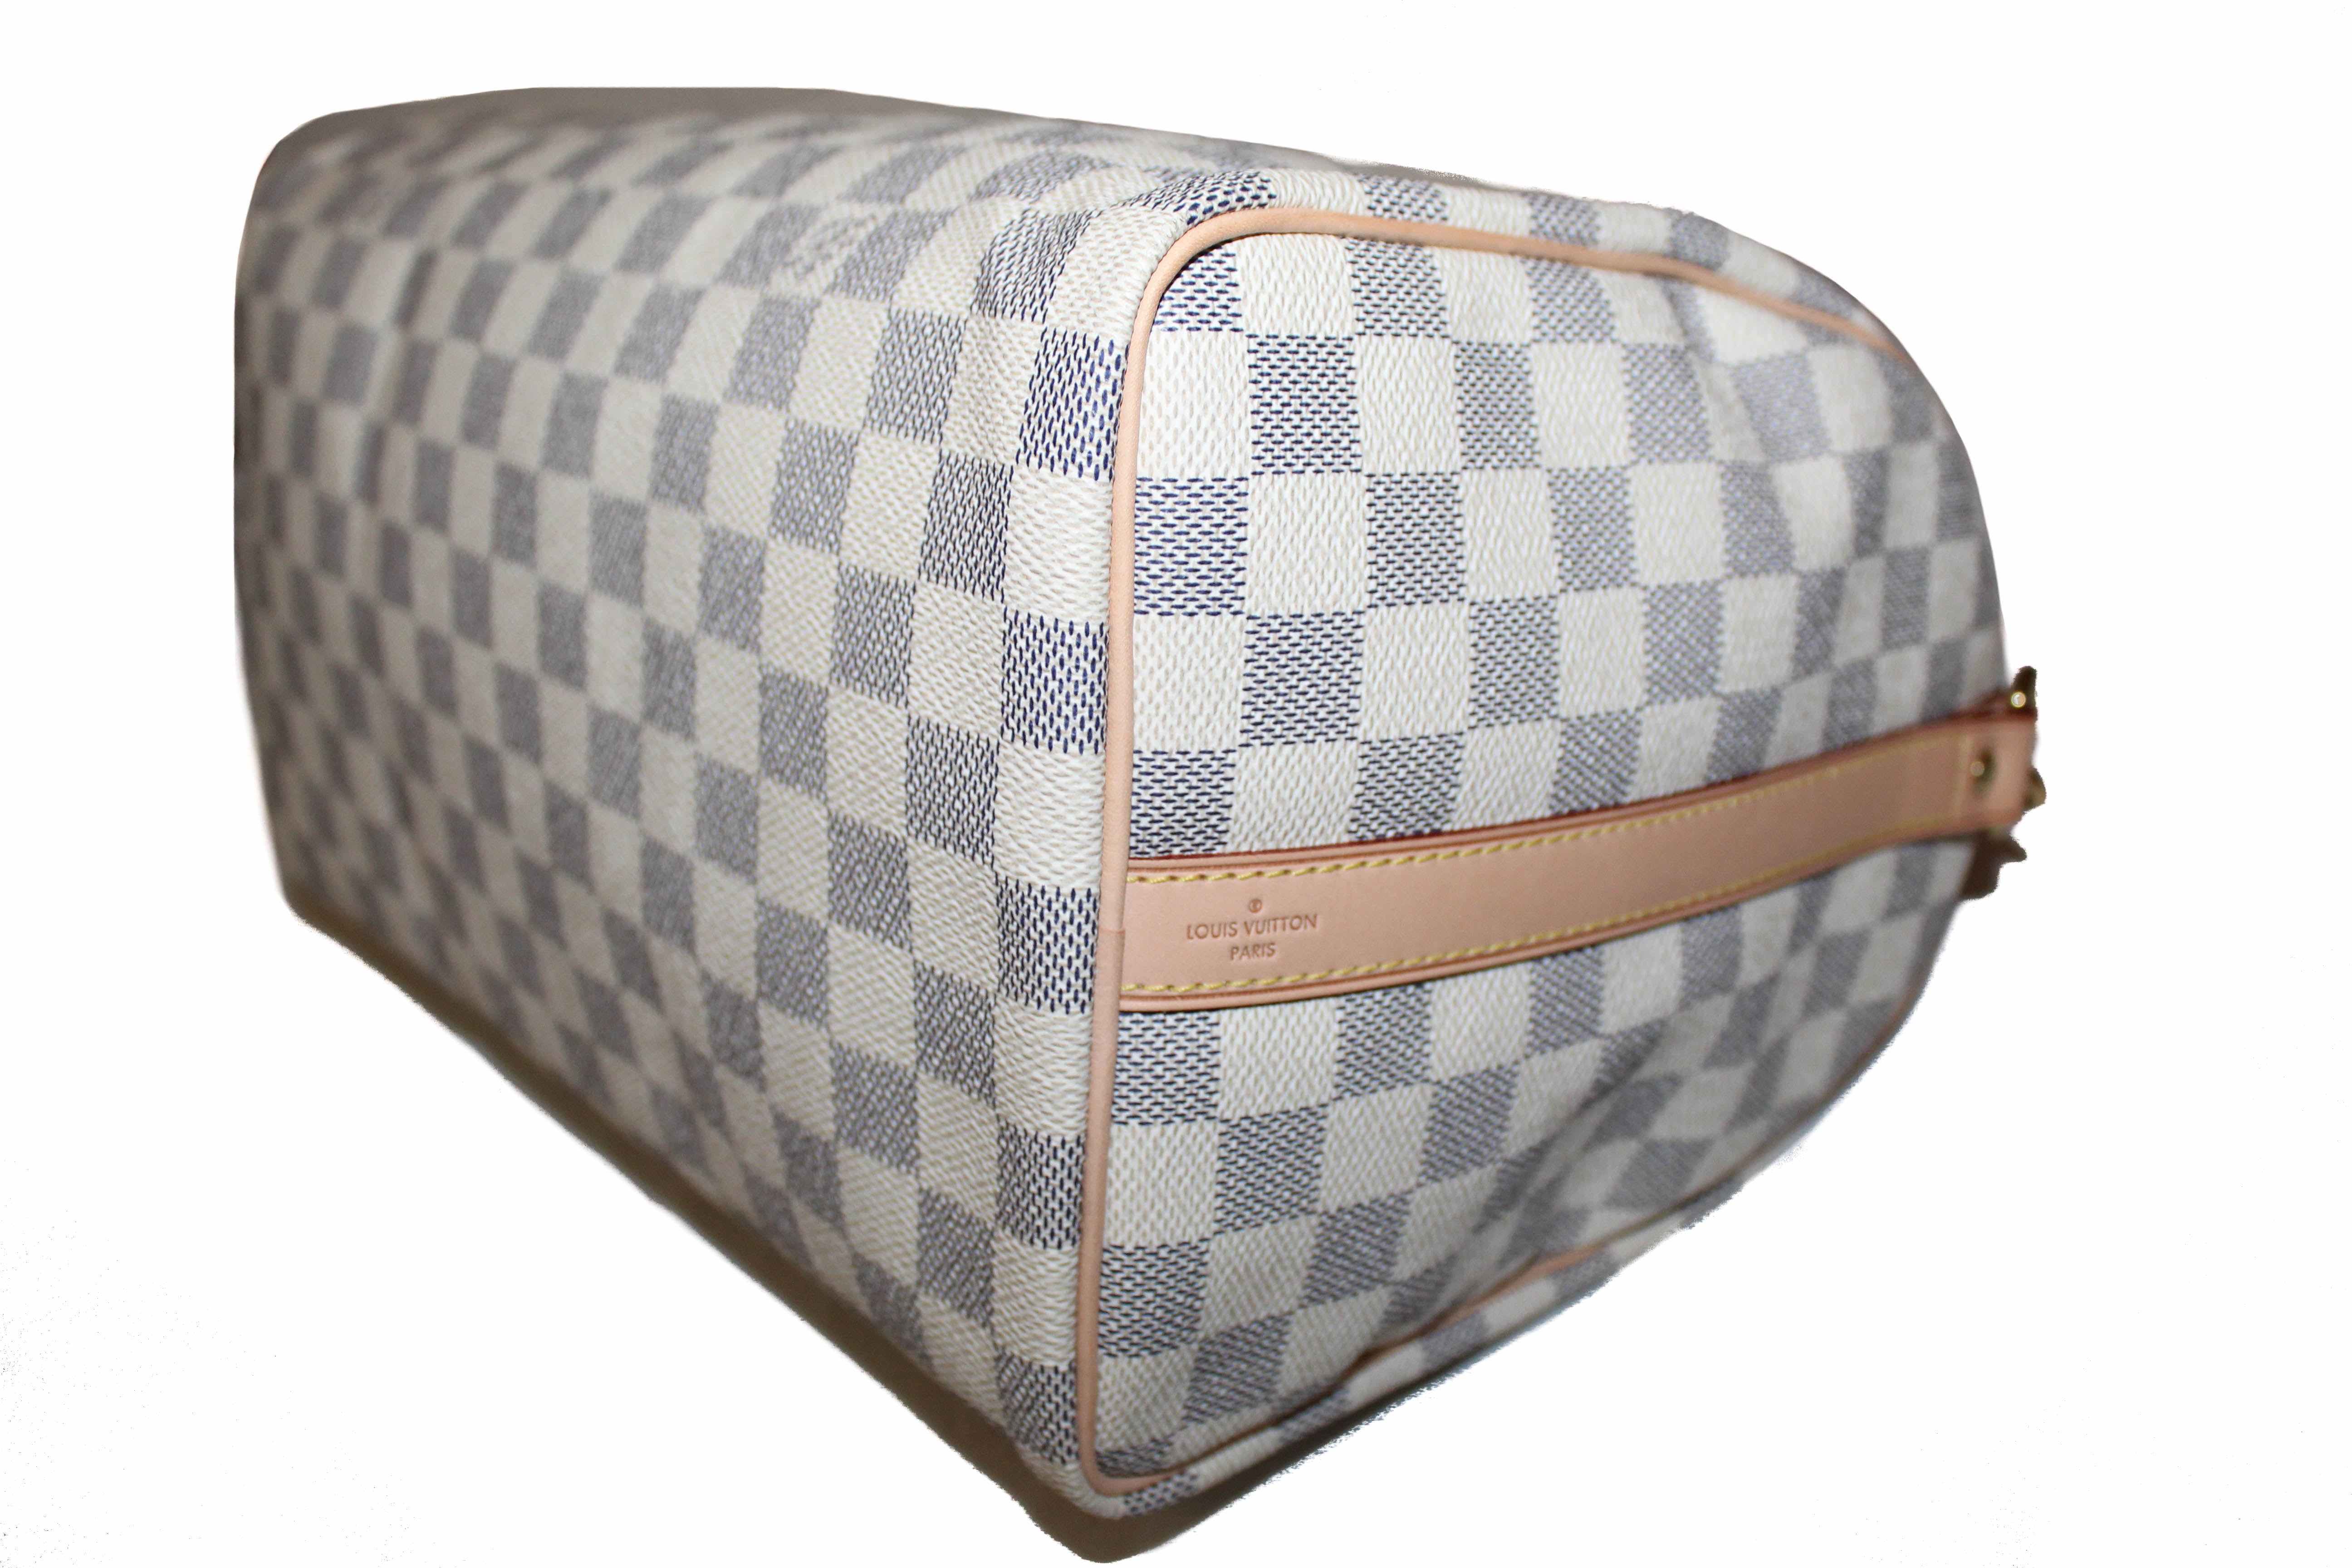 Authentic Louis Vuitton Damier Azur Canvas Speedy 30 Bandouliere Handbag/Shoulder/Messenger Bag